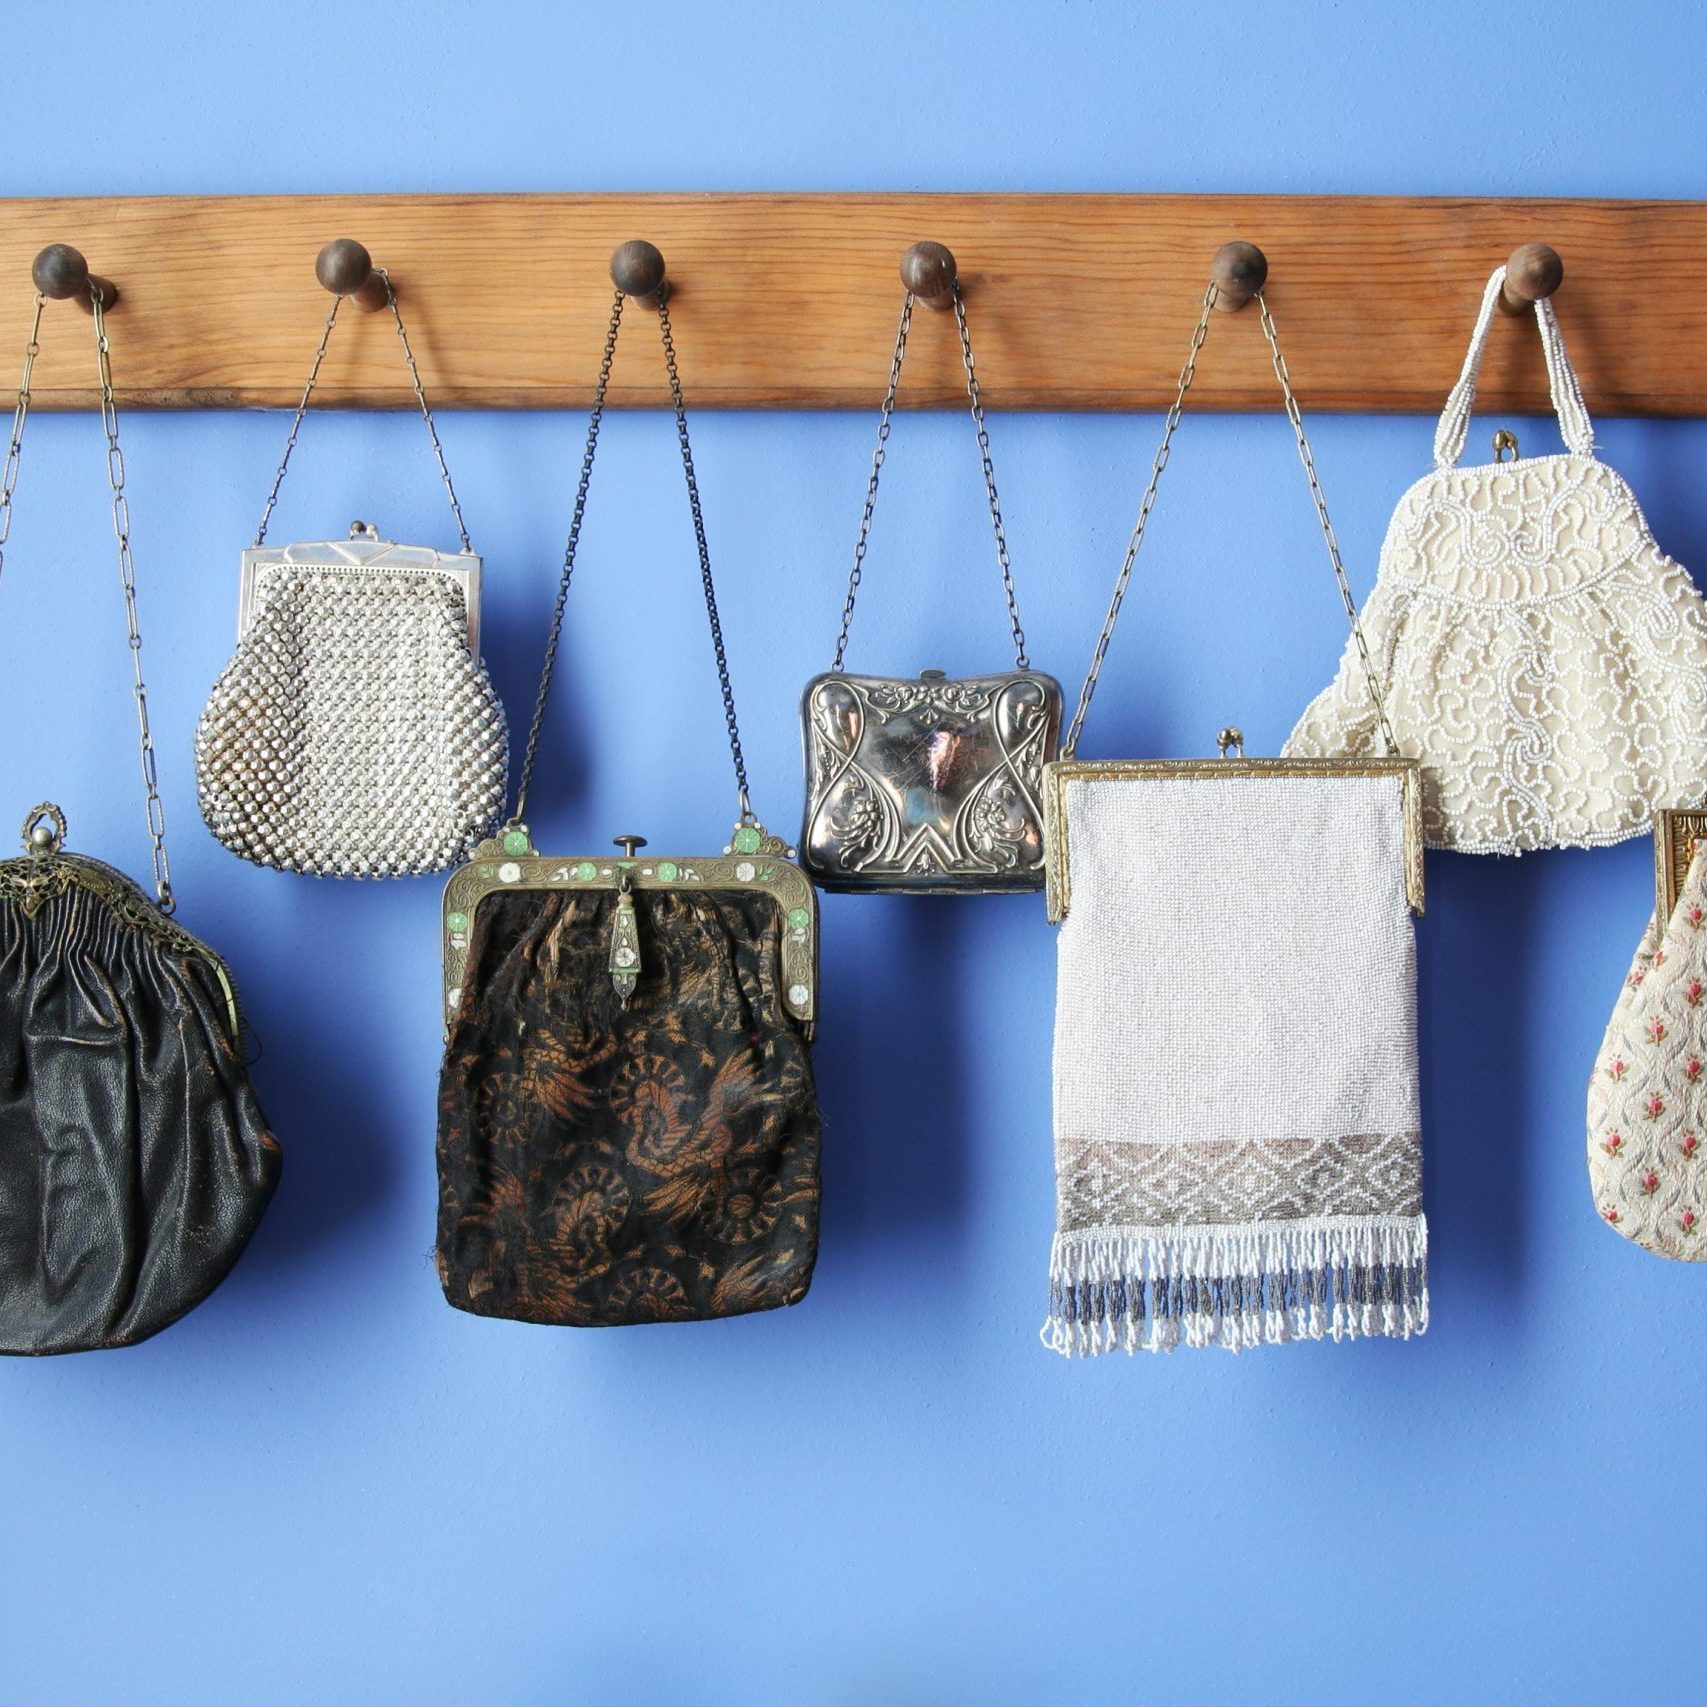 DIY Hanging Purse Organizer  Hanging purses, Organizing purses in closet,  Purse organization